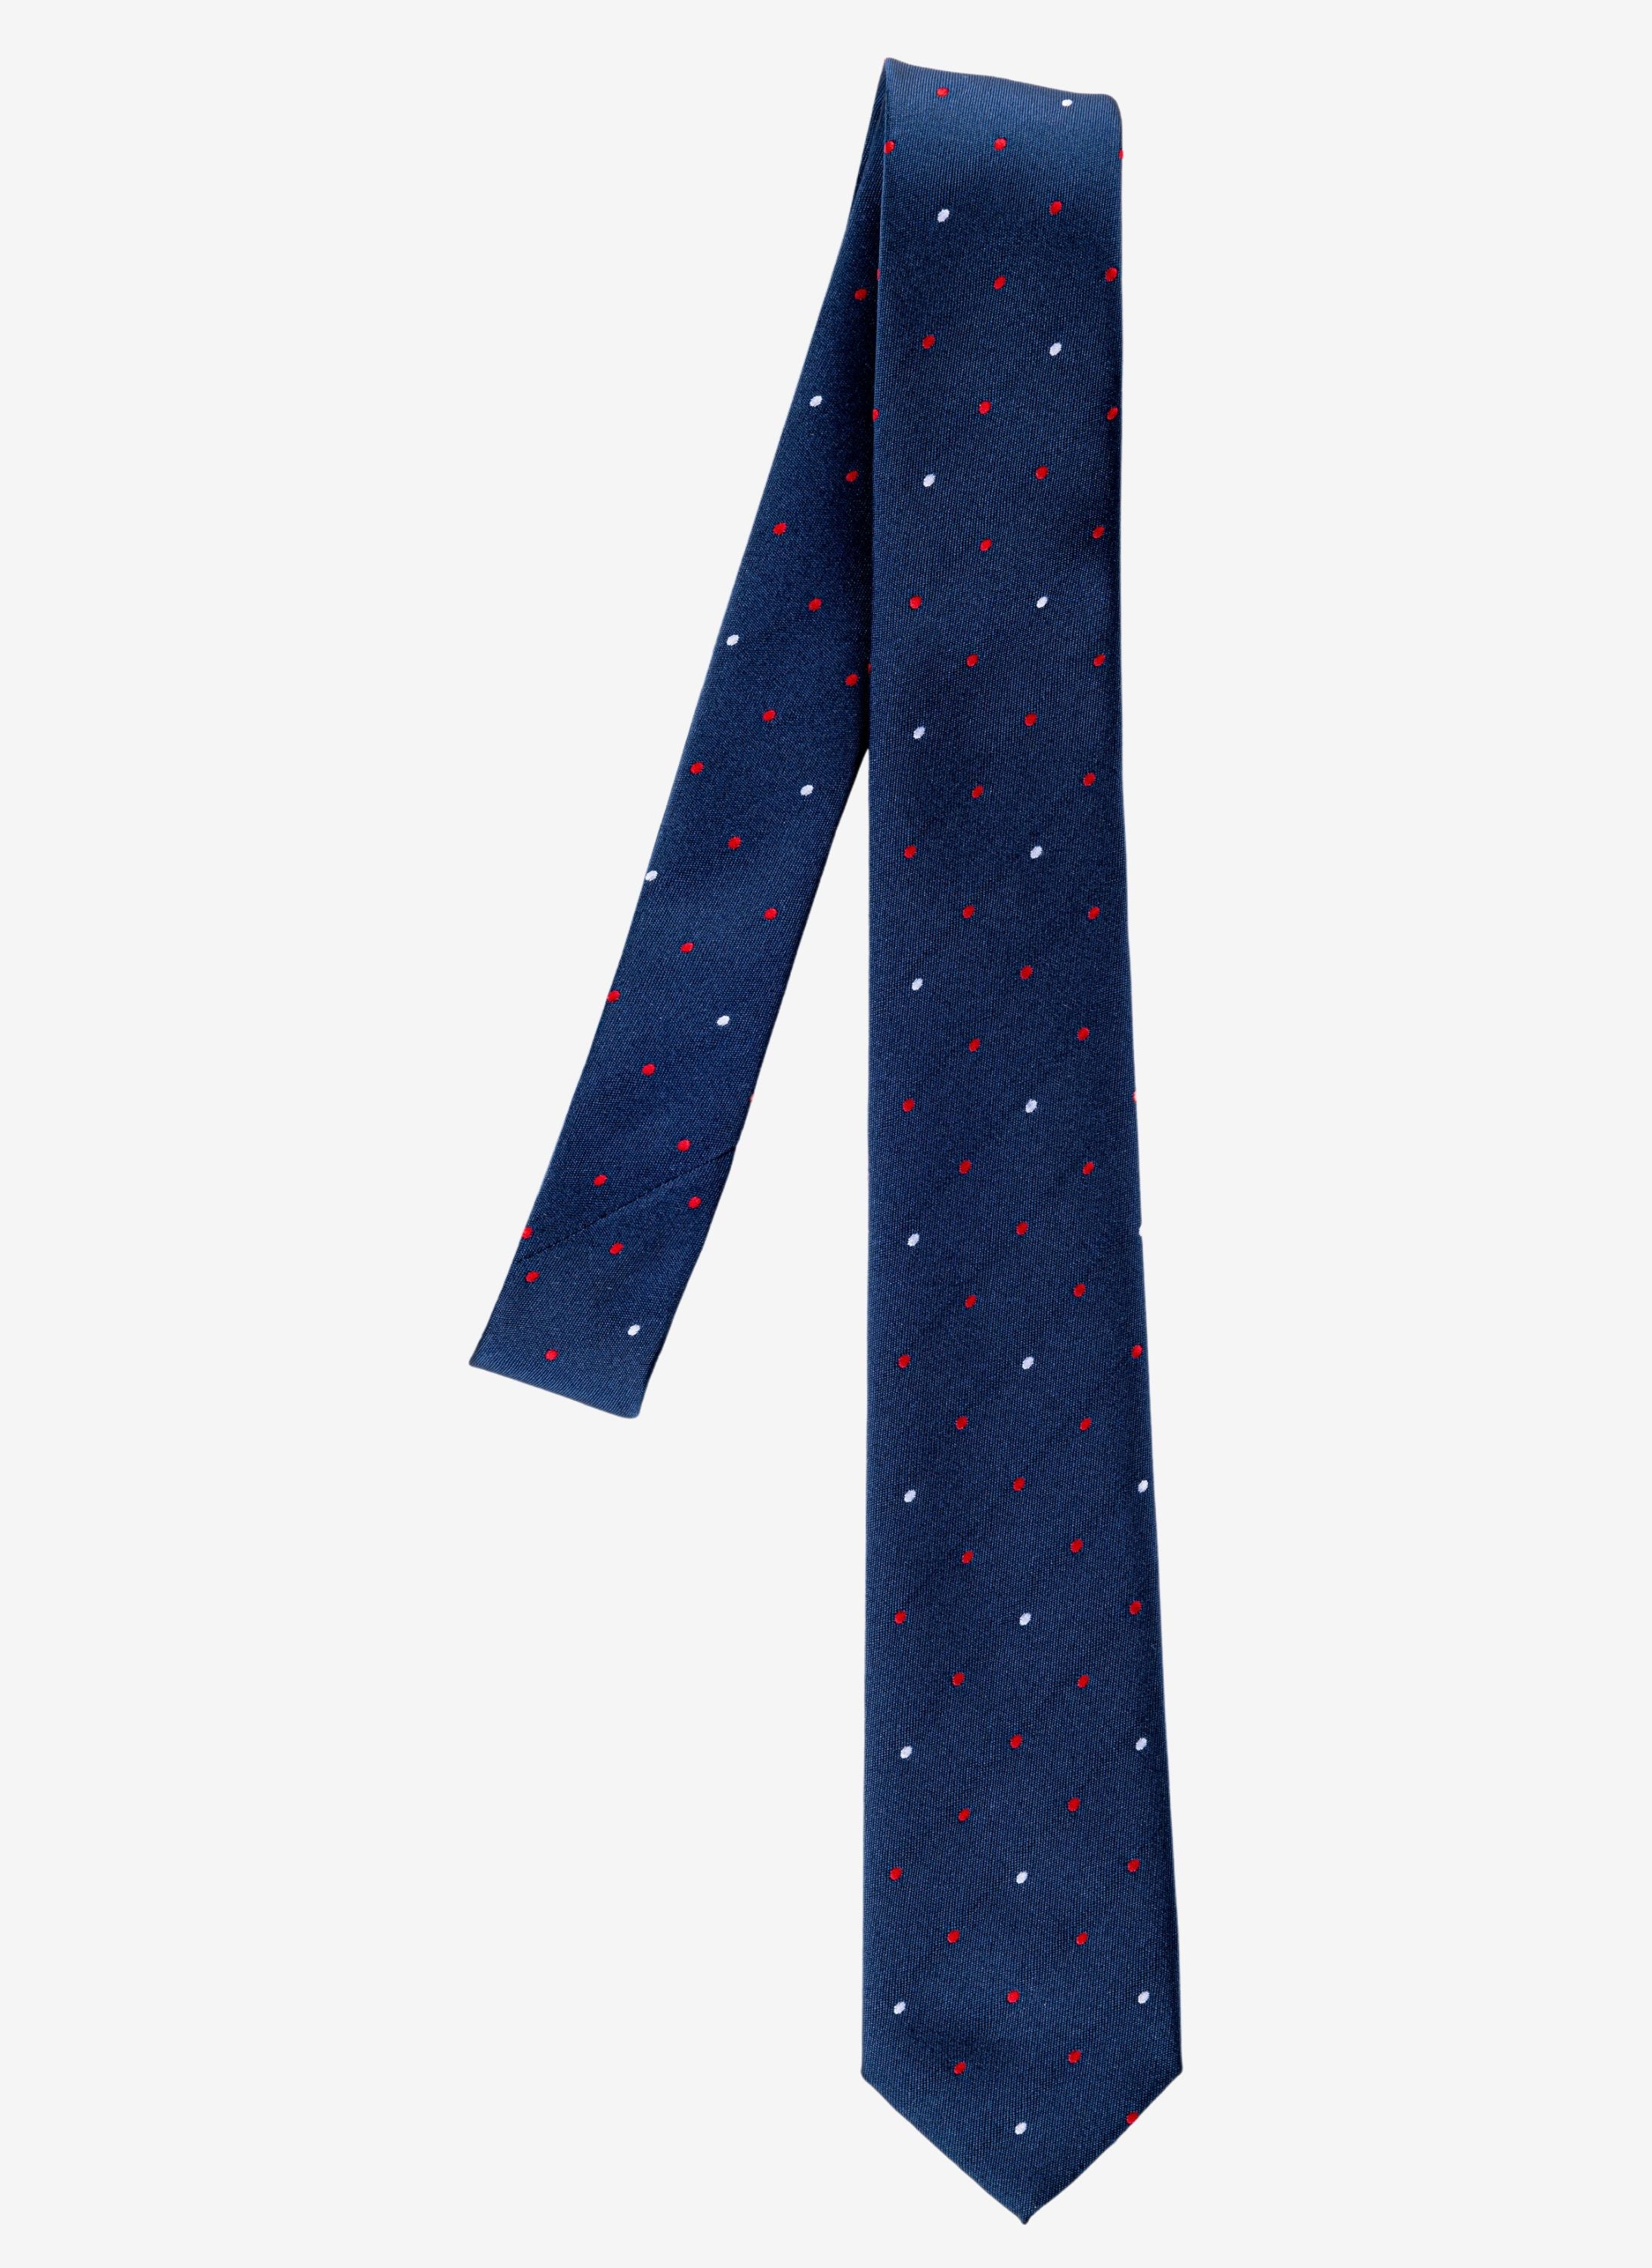 Elegante Krawatte in Blau mit roten und weissen Punkten.